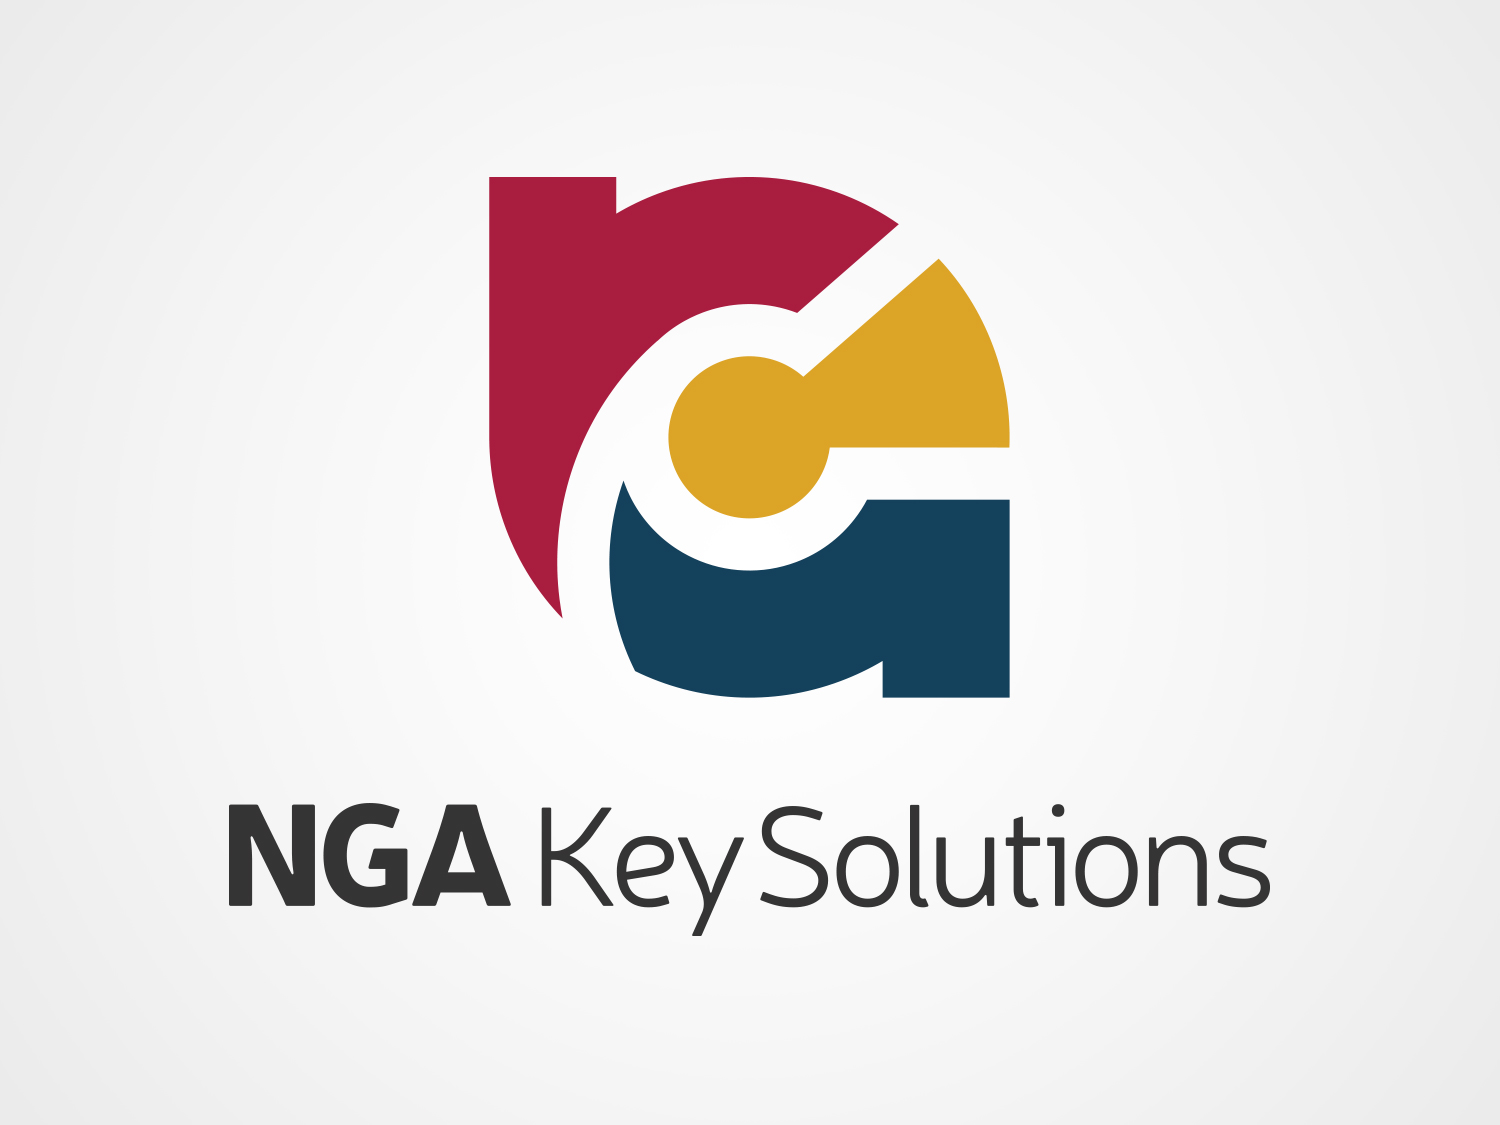 NGA Key Solutions